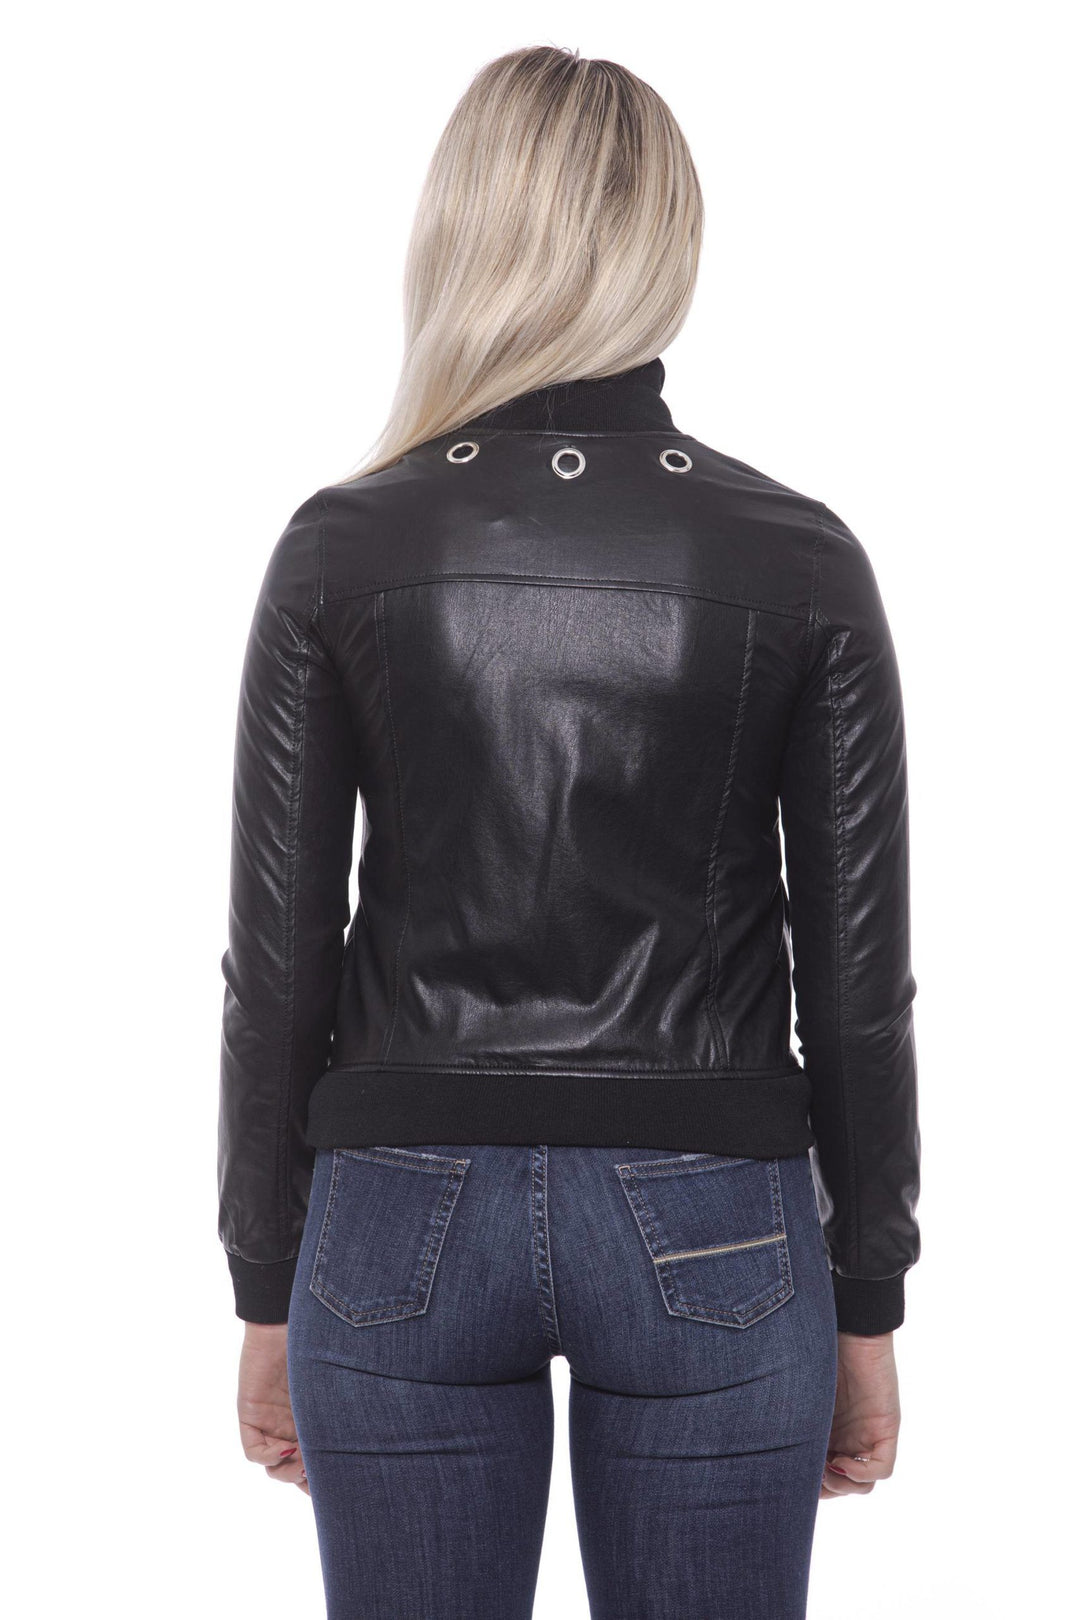 19V69 Italia Chic Eco-Leather Studded Slim Jacket